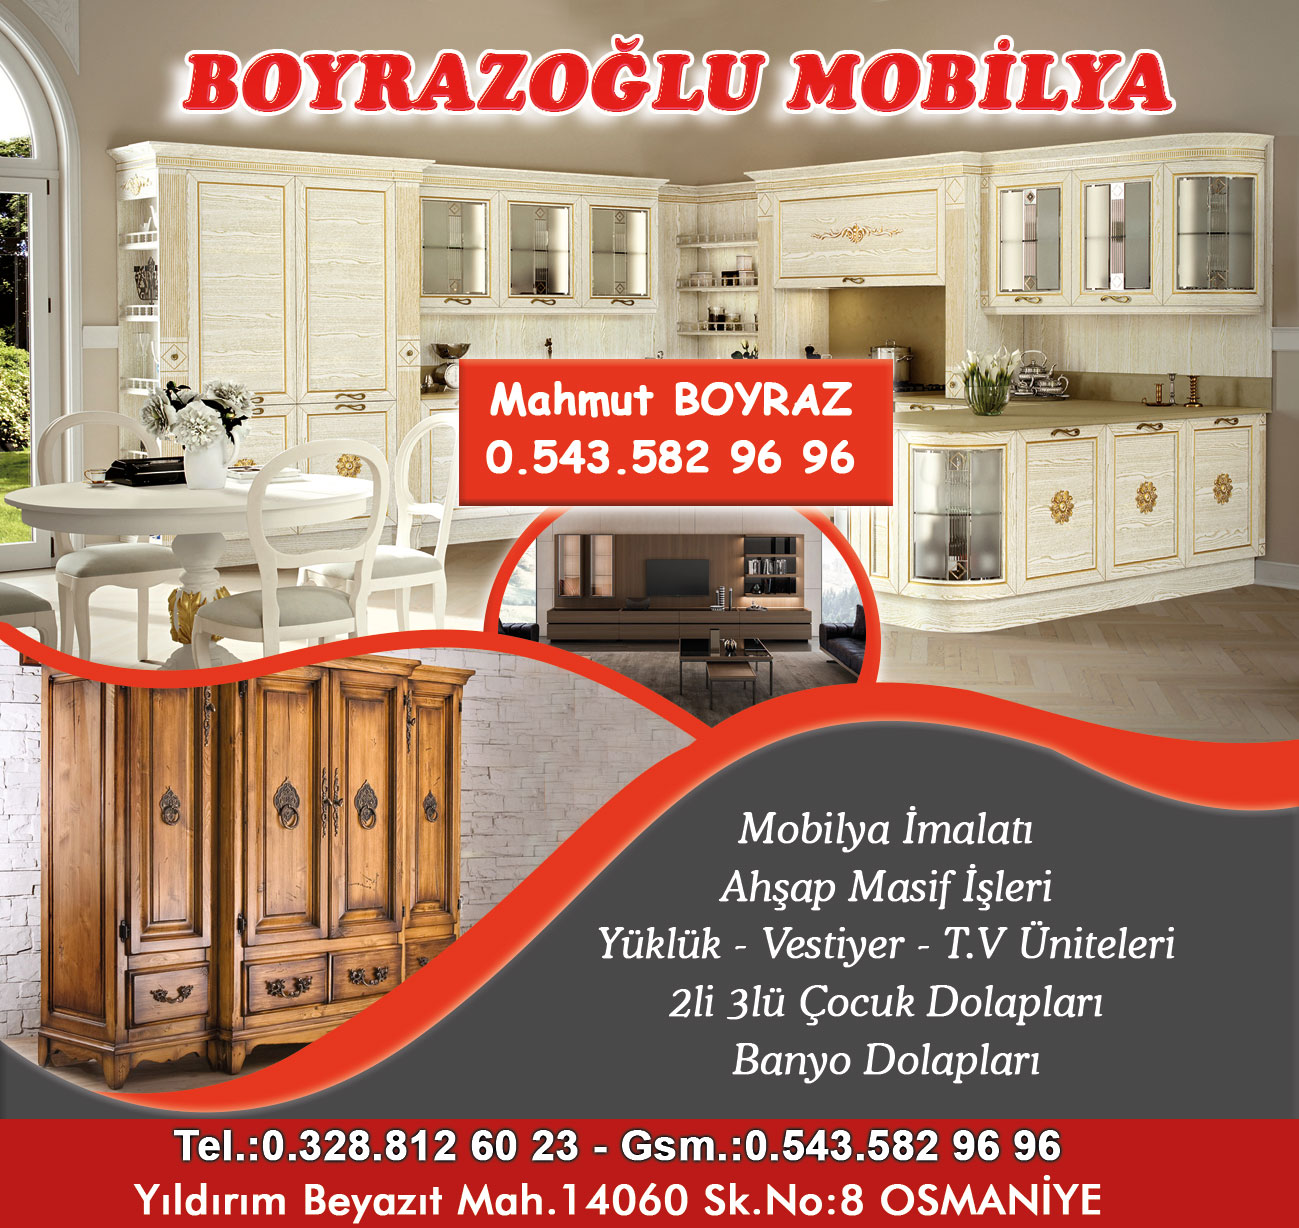 boyrazoglu-mobilya-osmaniye